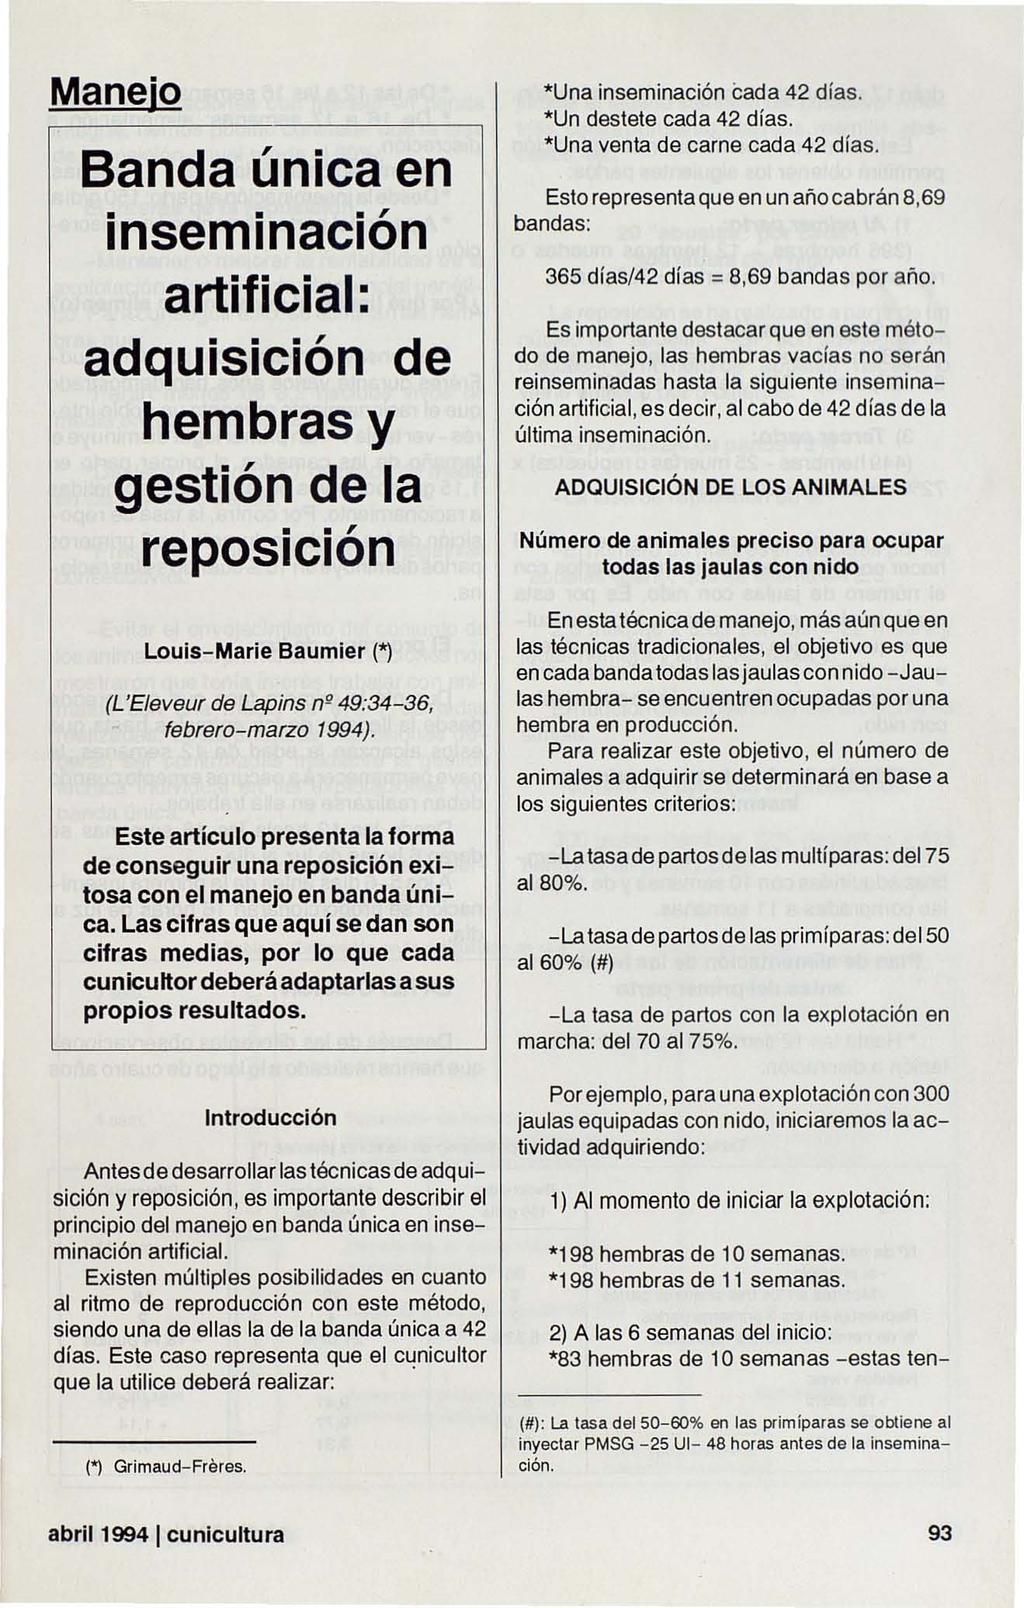 Manejo Banda única en..., Insemlnaclon artificial: adquisición de hembras y gestión de la.., reposlclon Louis- Marie Baumier (*) (L 'Eleveur de Lapins n" 49:34-36, febrero-marzo 1994).